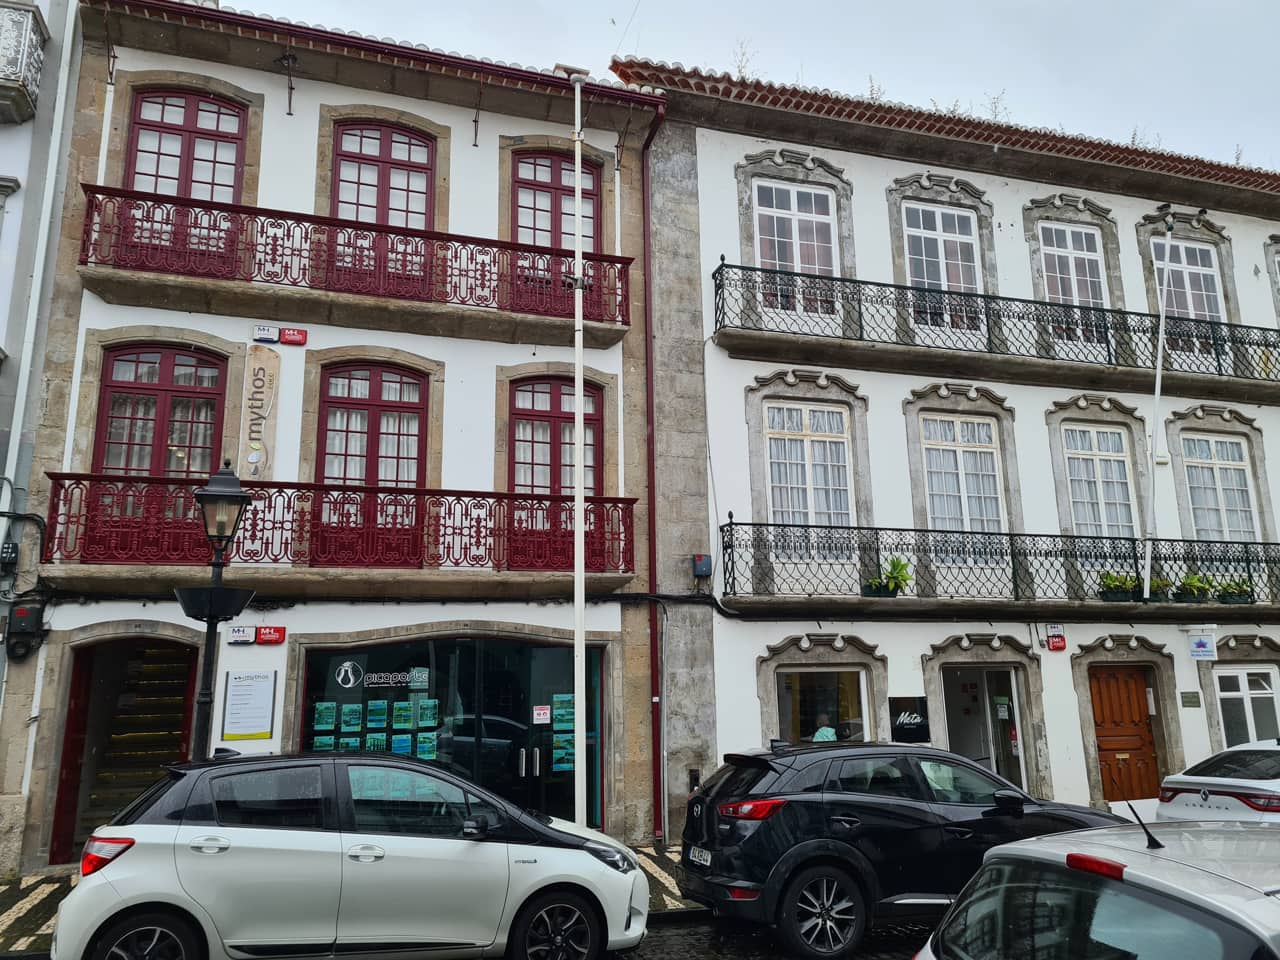 Häuserzeile in Angra do Heroísmo auf der Azoreninsel Terceira